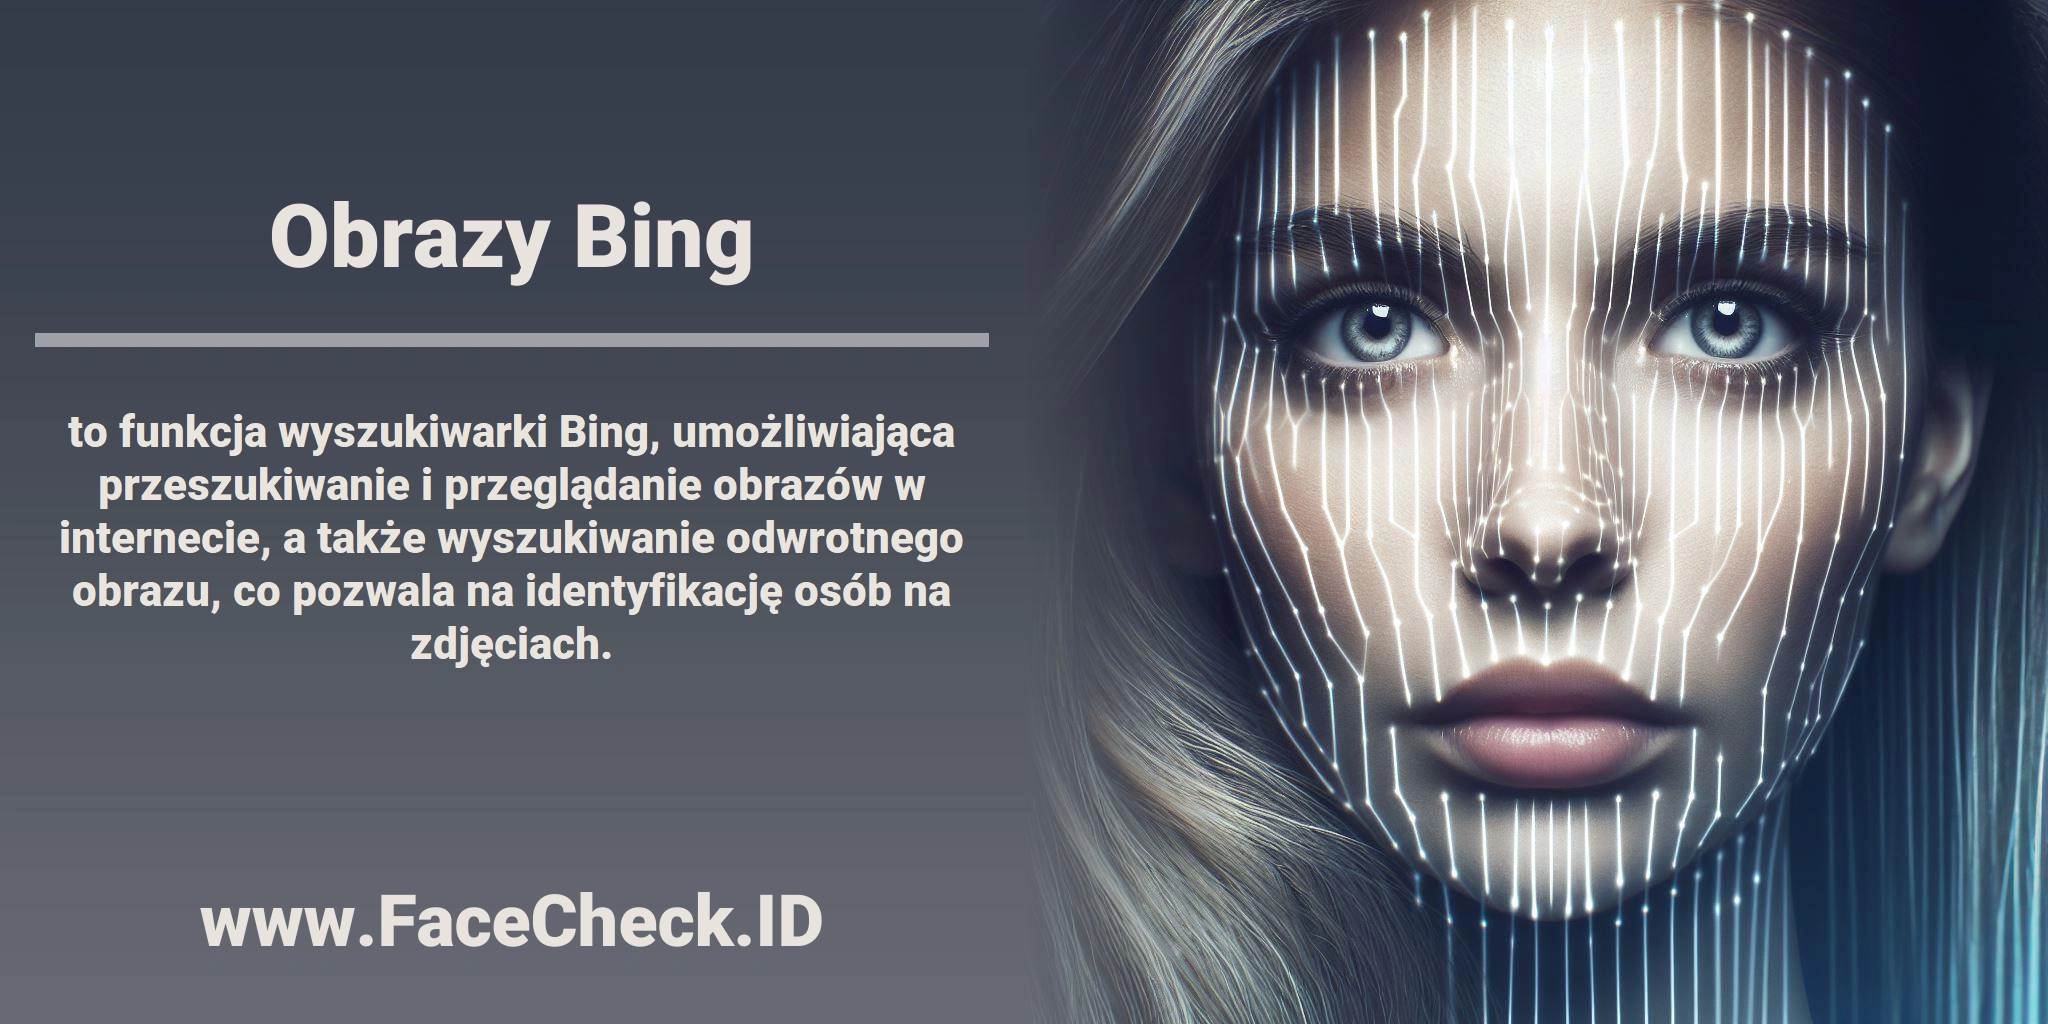 <b>Obrazy Bing</b> to funkcja wyszukiwarki Bing, umożliwiająca przeszukiwanie i przeglądanie obrazów w internecie, a także wyszukiwanie odwrotnego obrazu, co pozwala na identyfikację osób na zdjęciach.